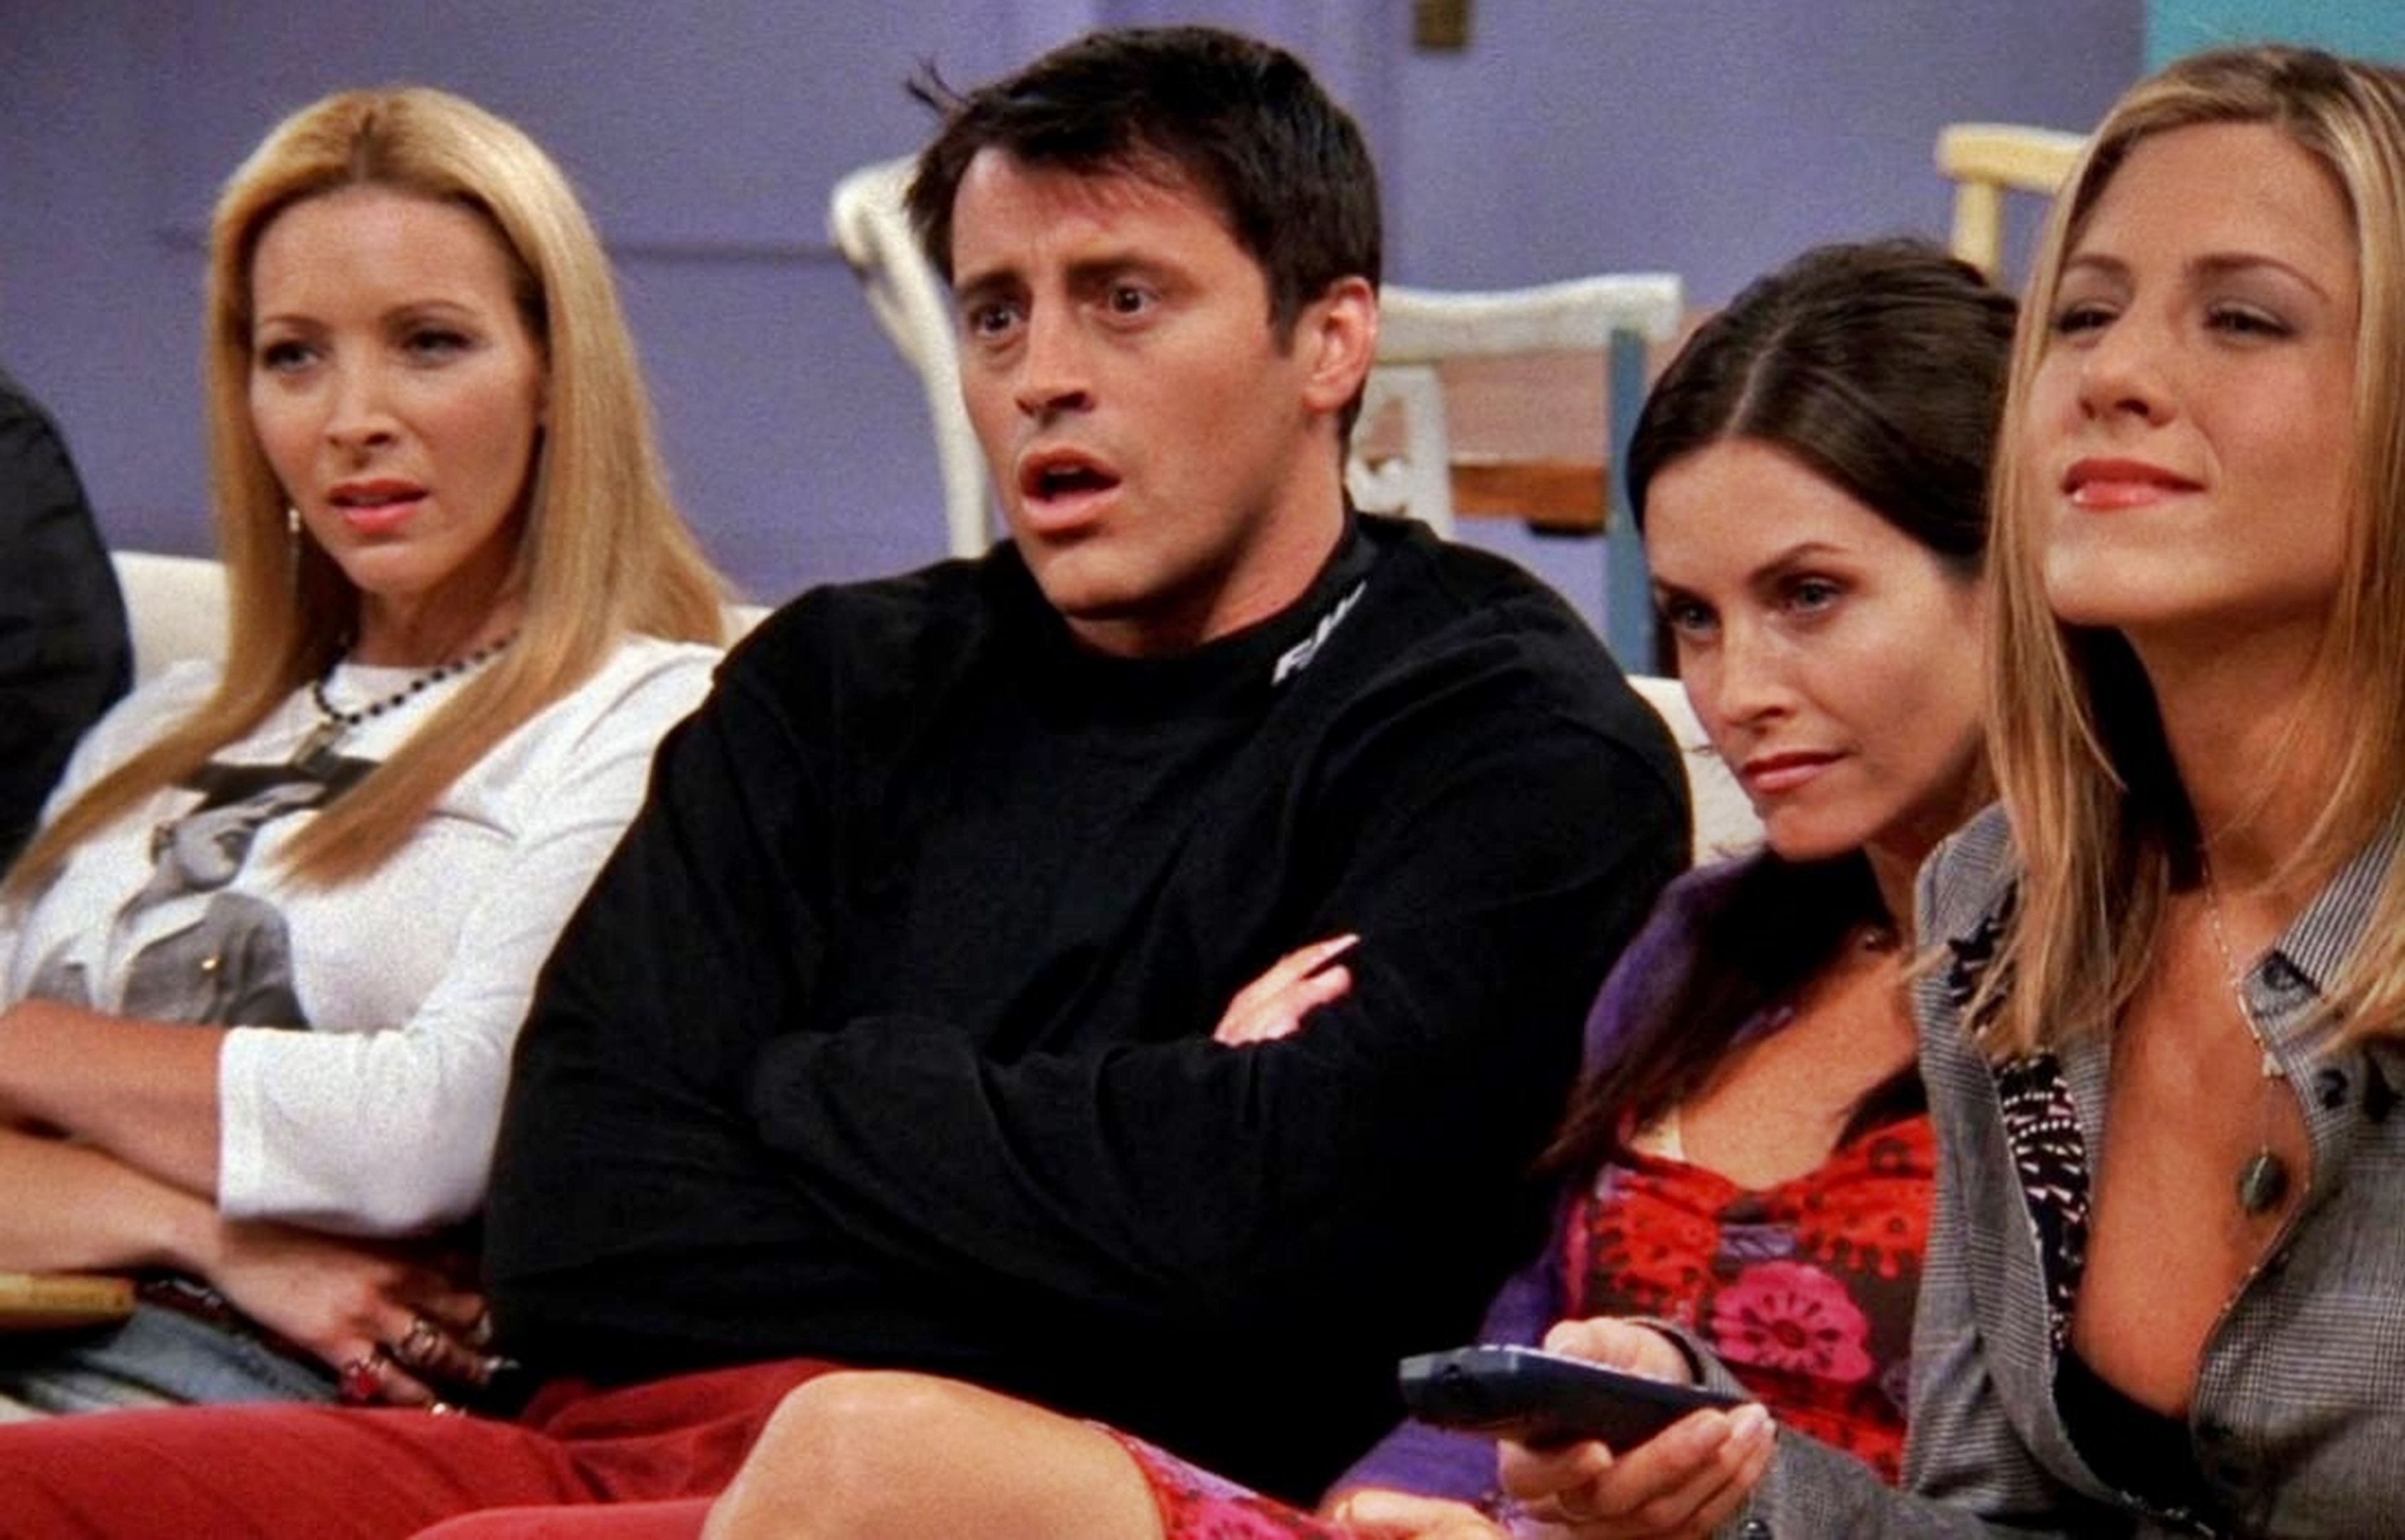 La trama descartada de Friends que podría (o no) haber arruinado la serie